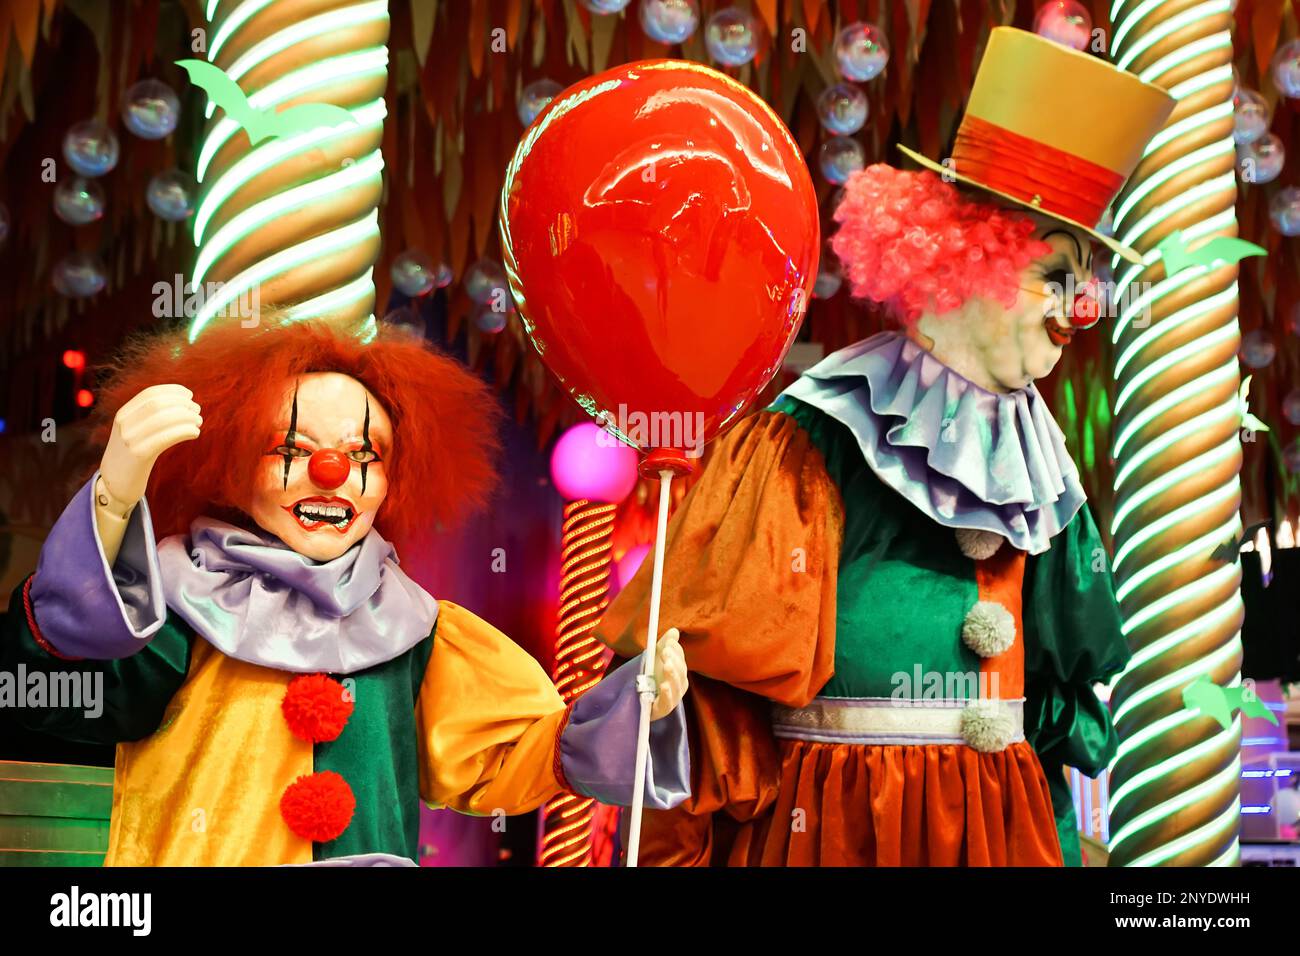 Deux poupées clown font peur aux passants. Halloween. Photo de haute qualité Banque D'Images